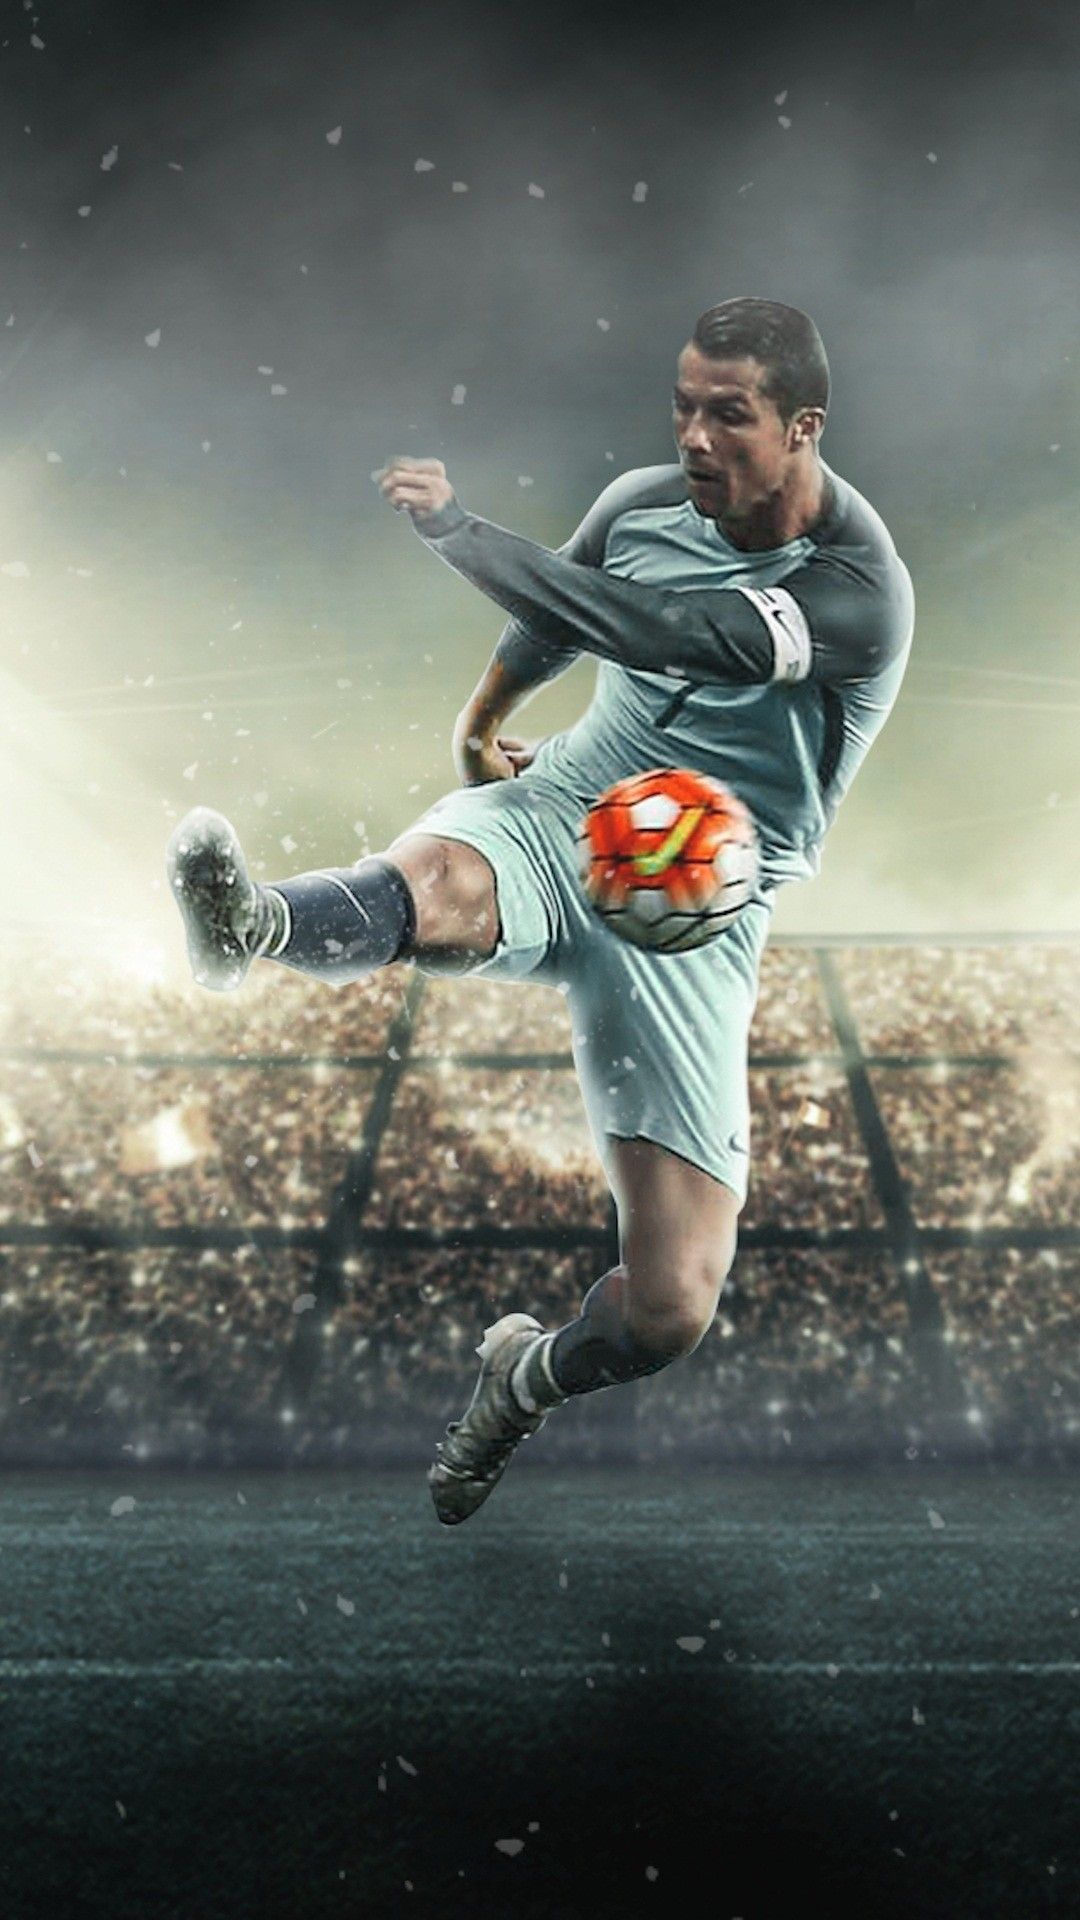 Cristiano Ronaldo Wallpaper for iPhone